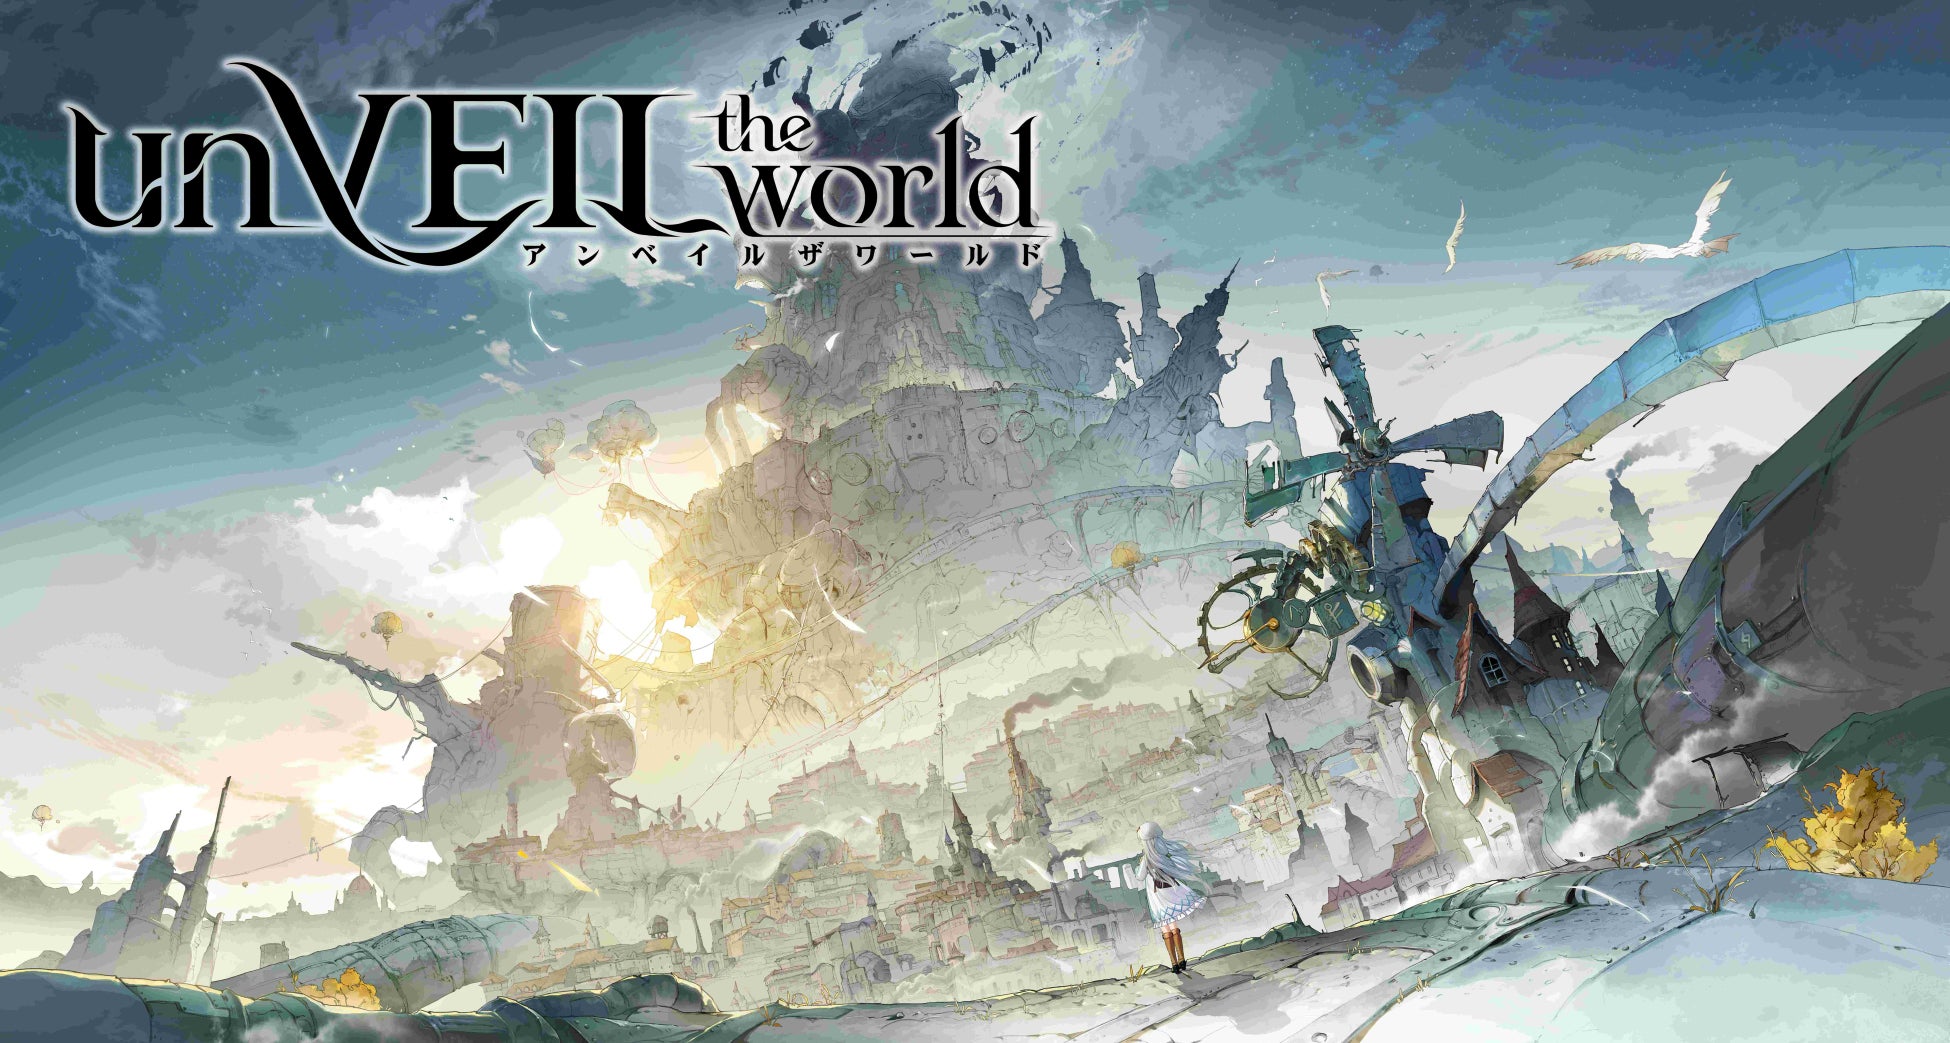 集英社ゲームズ×NetEase Games超大型プロジェクトiOS/Android向けストラテジック冒険活劇RPG『unVEIL the world アンベイル ザ ワールド』発表！